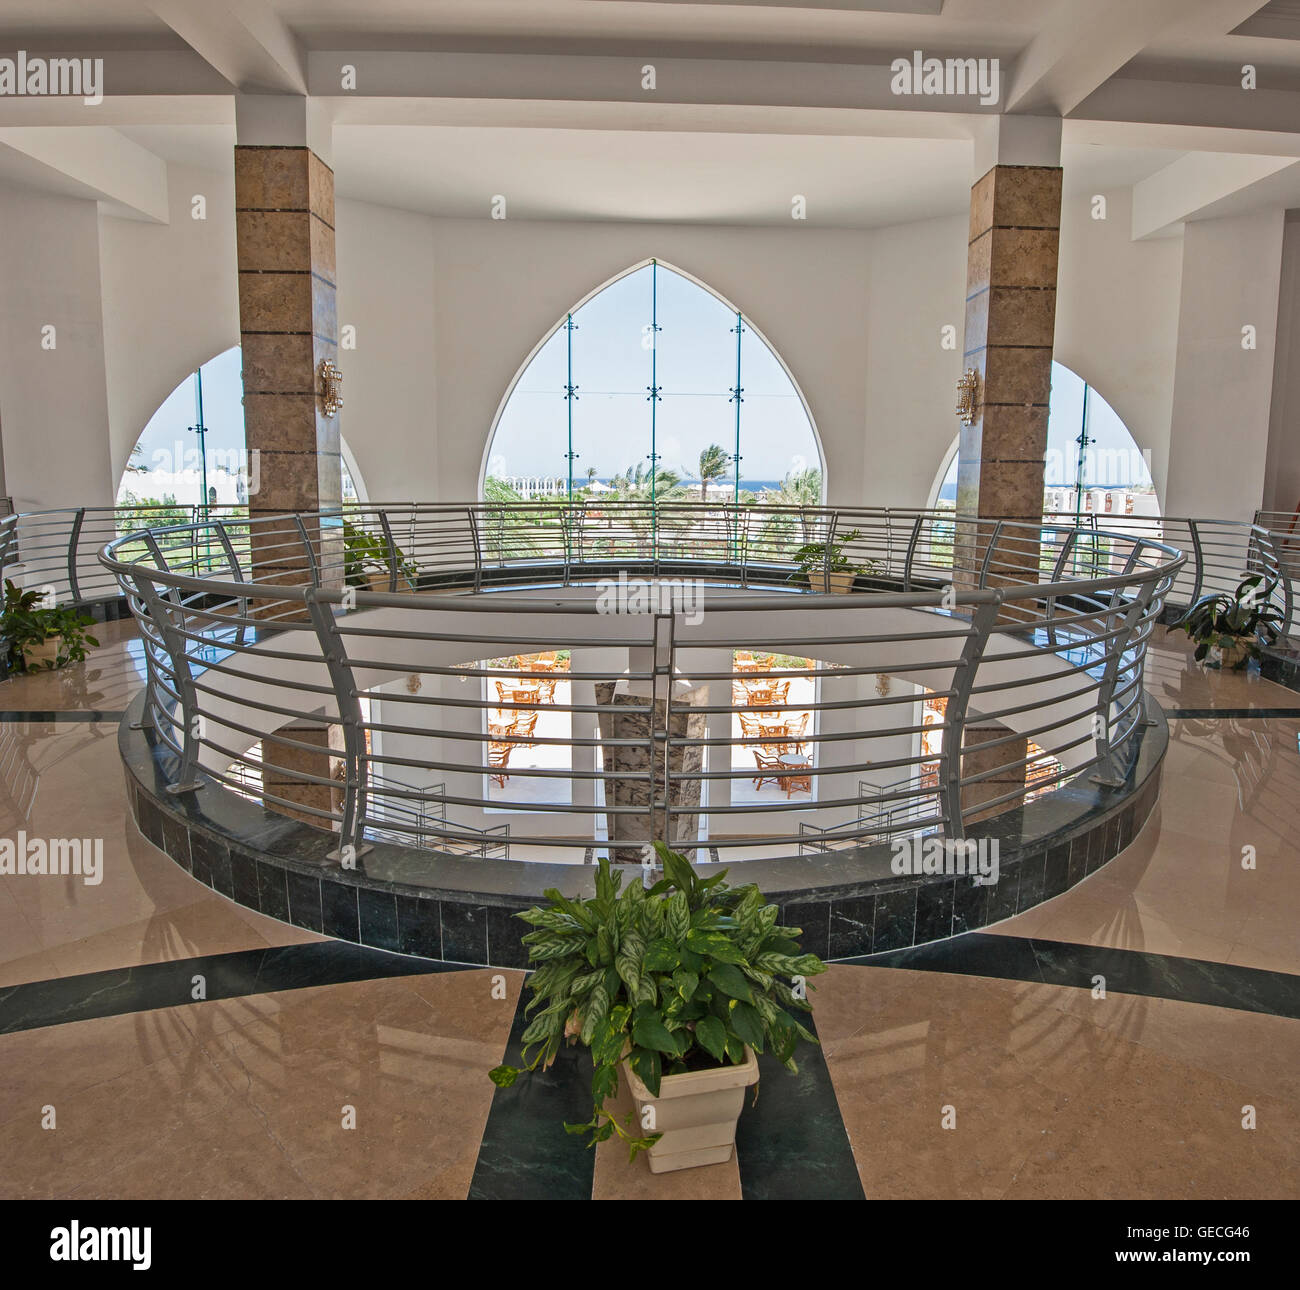 Architecture design d'intérieur du hall de l'atrium dans le luxe tropical resort hôtel avec grande fenêtre panoramique Banque D'Images